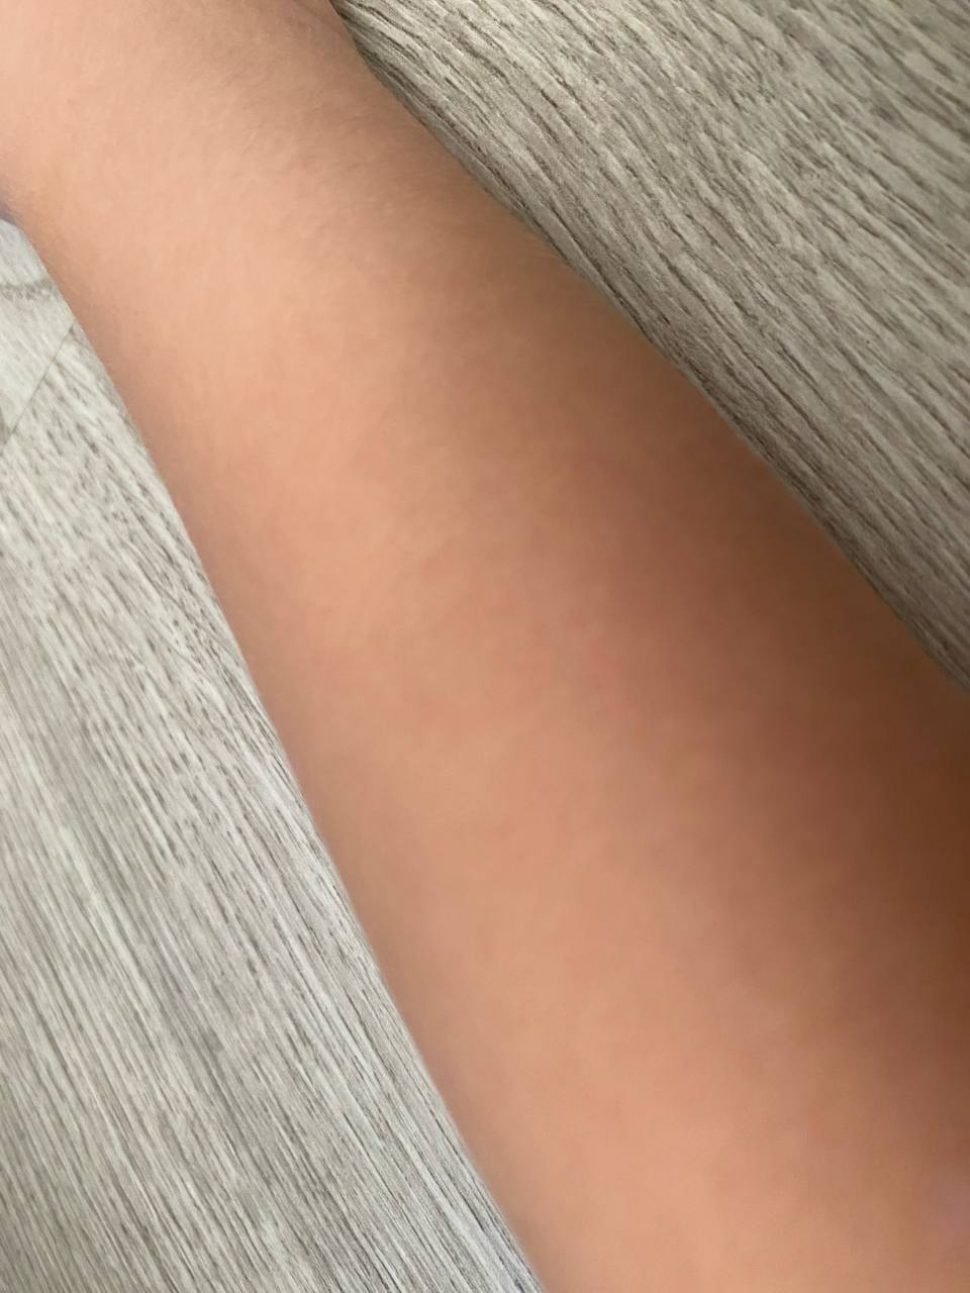 В Котласе 5-летняя девочка сломала руку на батуте